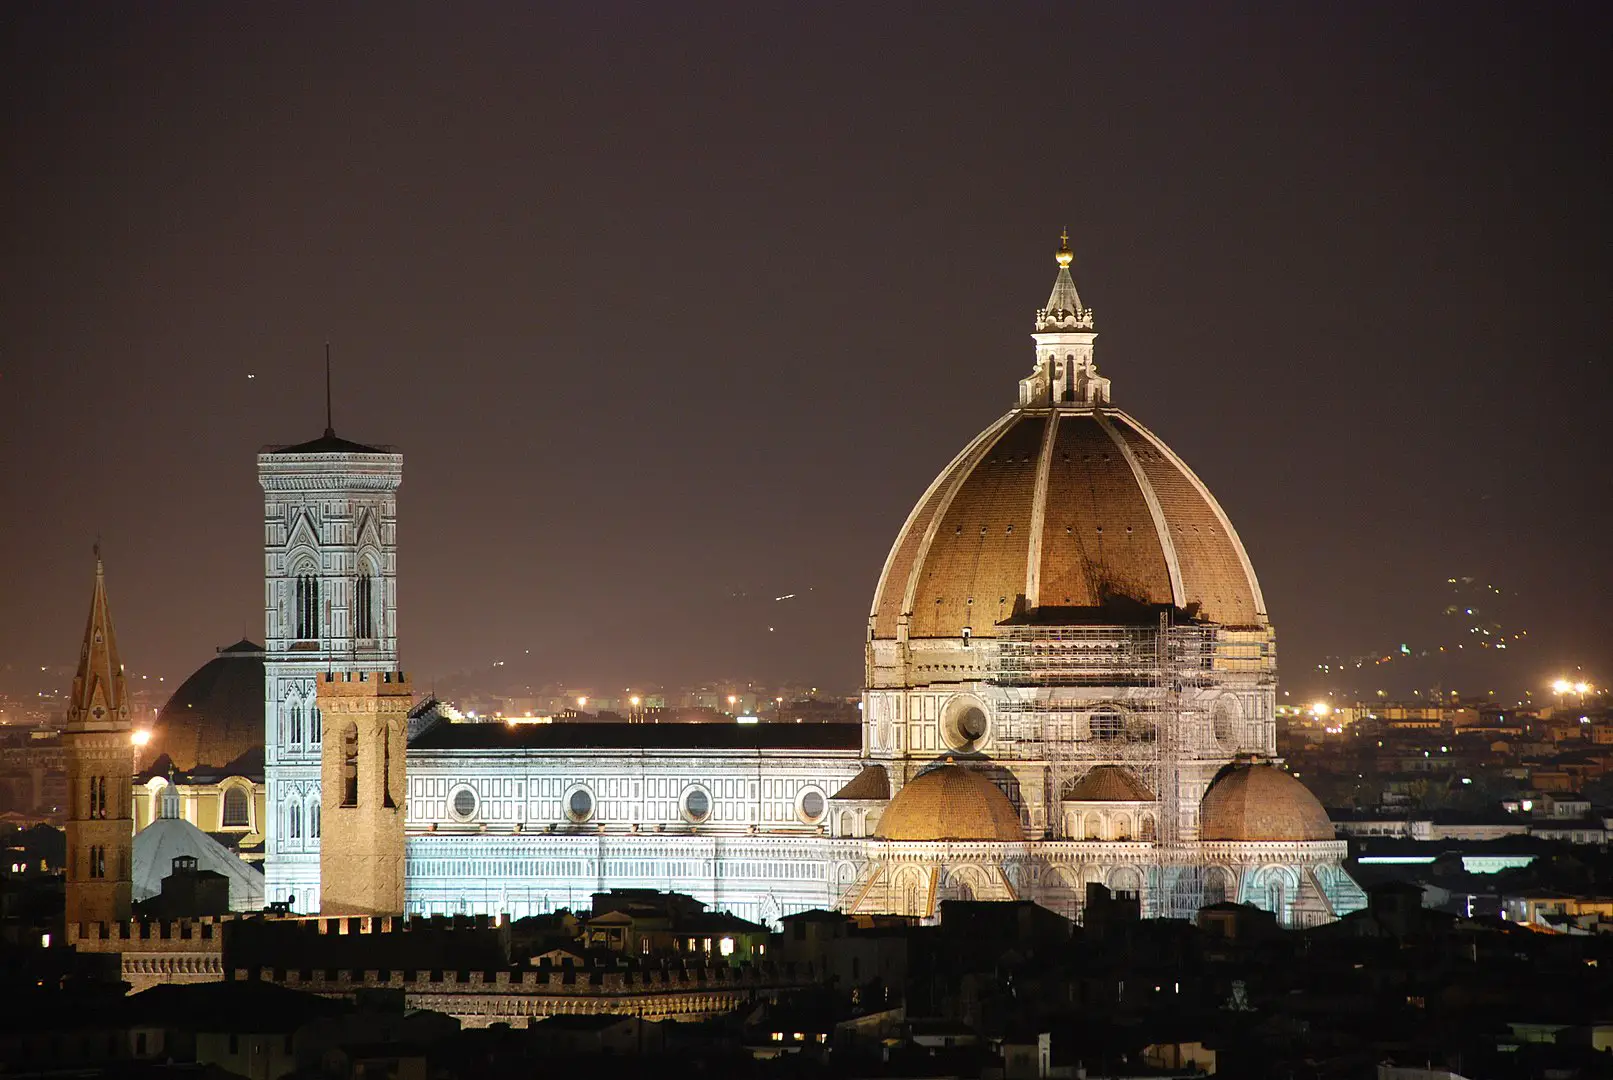 Cómo construyó Brunelleschi la cúpula del Duomo de Florencia, una de las construcciones más bellas de la arquitectura renacentista